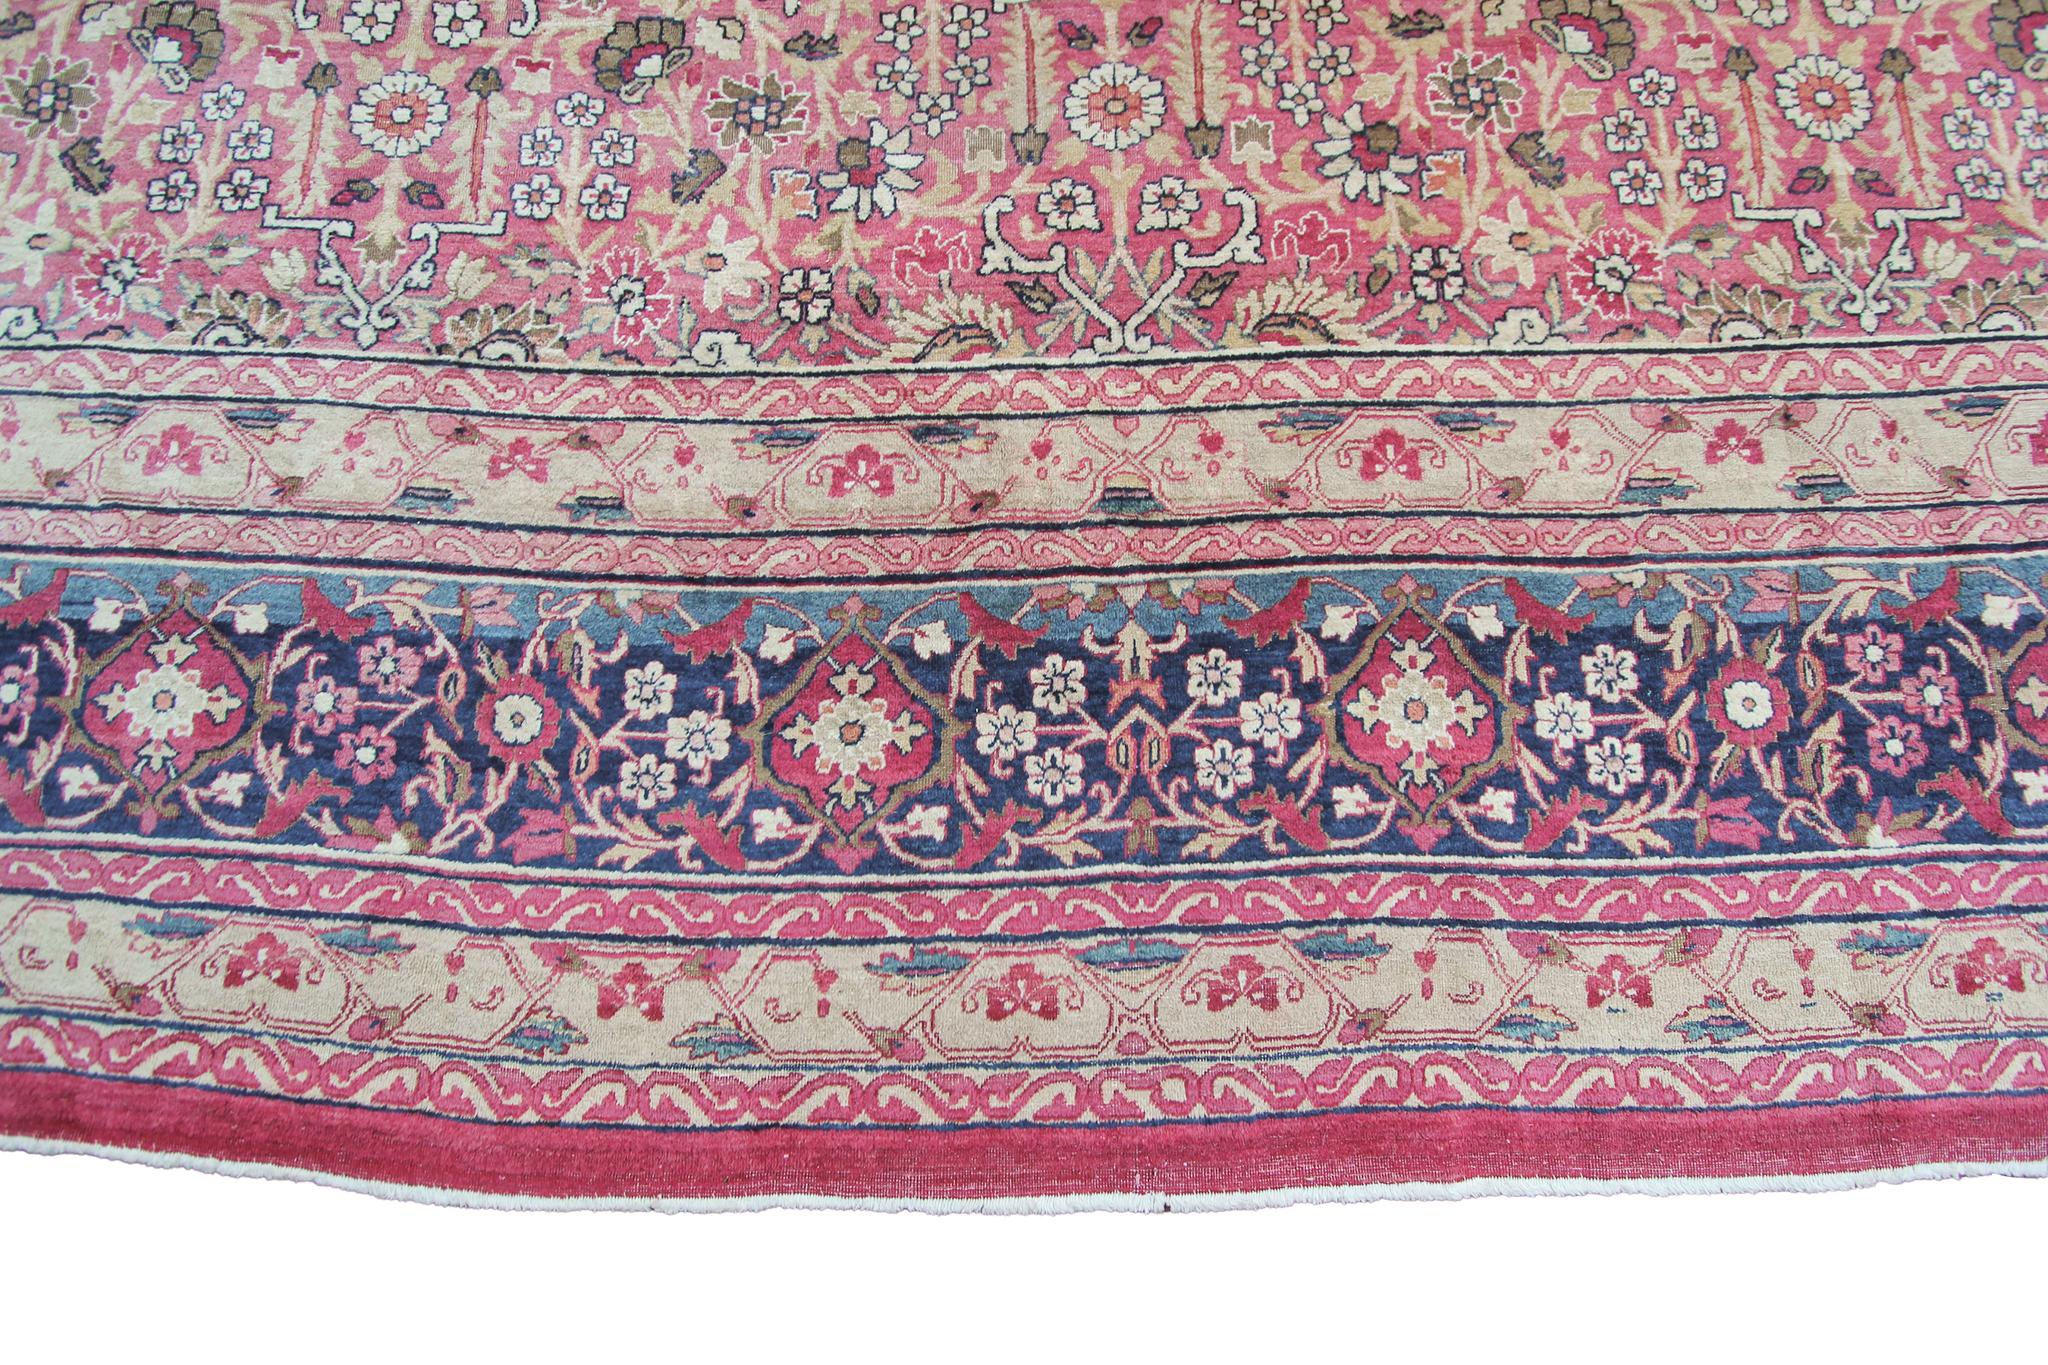 Wool c1870 Pink Antique Lavar Kermanshah Fine Geometric Rug 11x17ft 138cm x 519cm For Sale